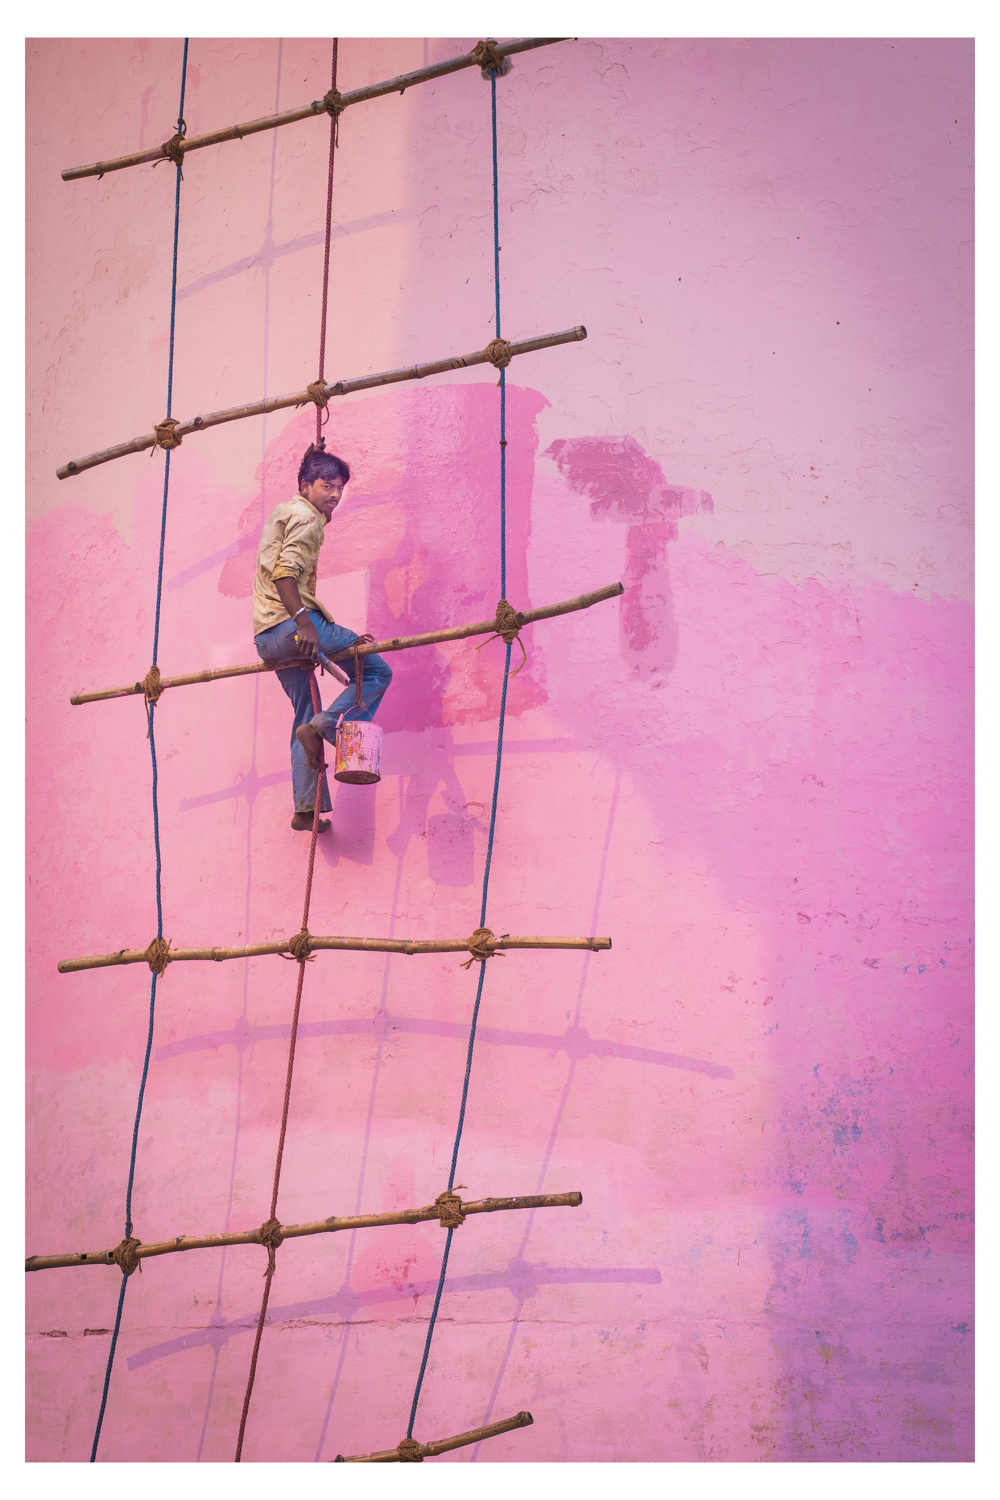 Man Painting Pink Wall - India 2012